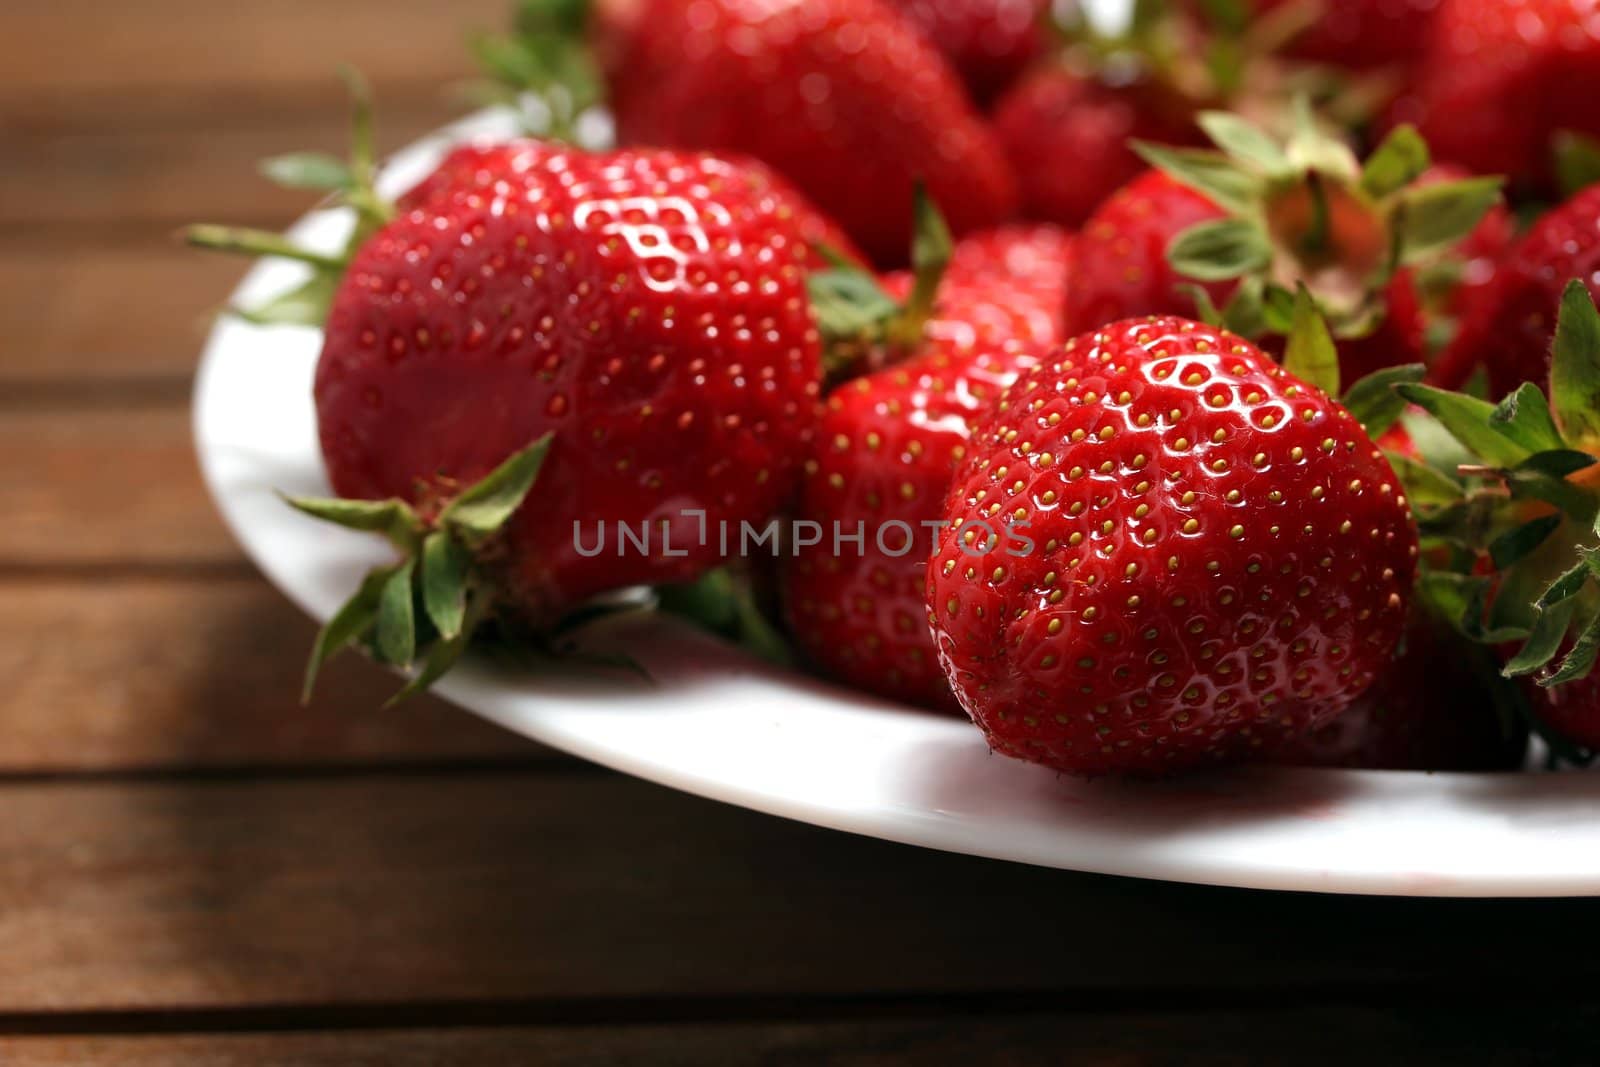 a plate of fresh strawberries by Teka77